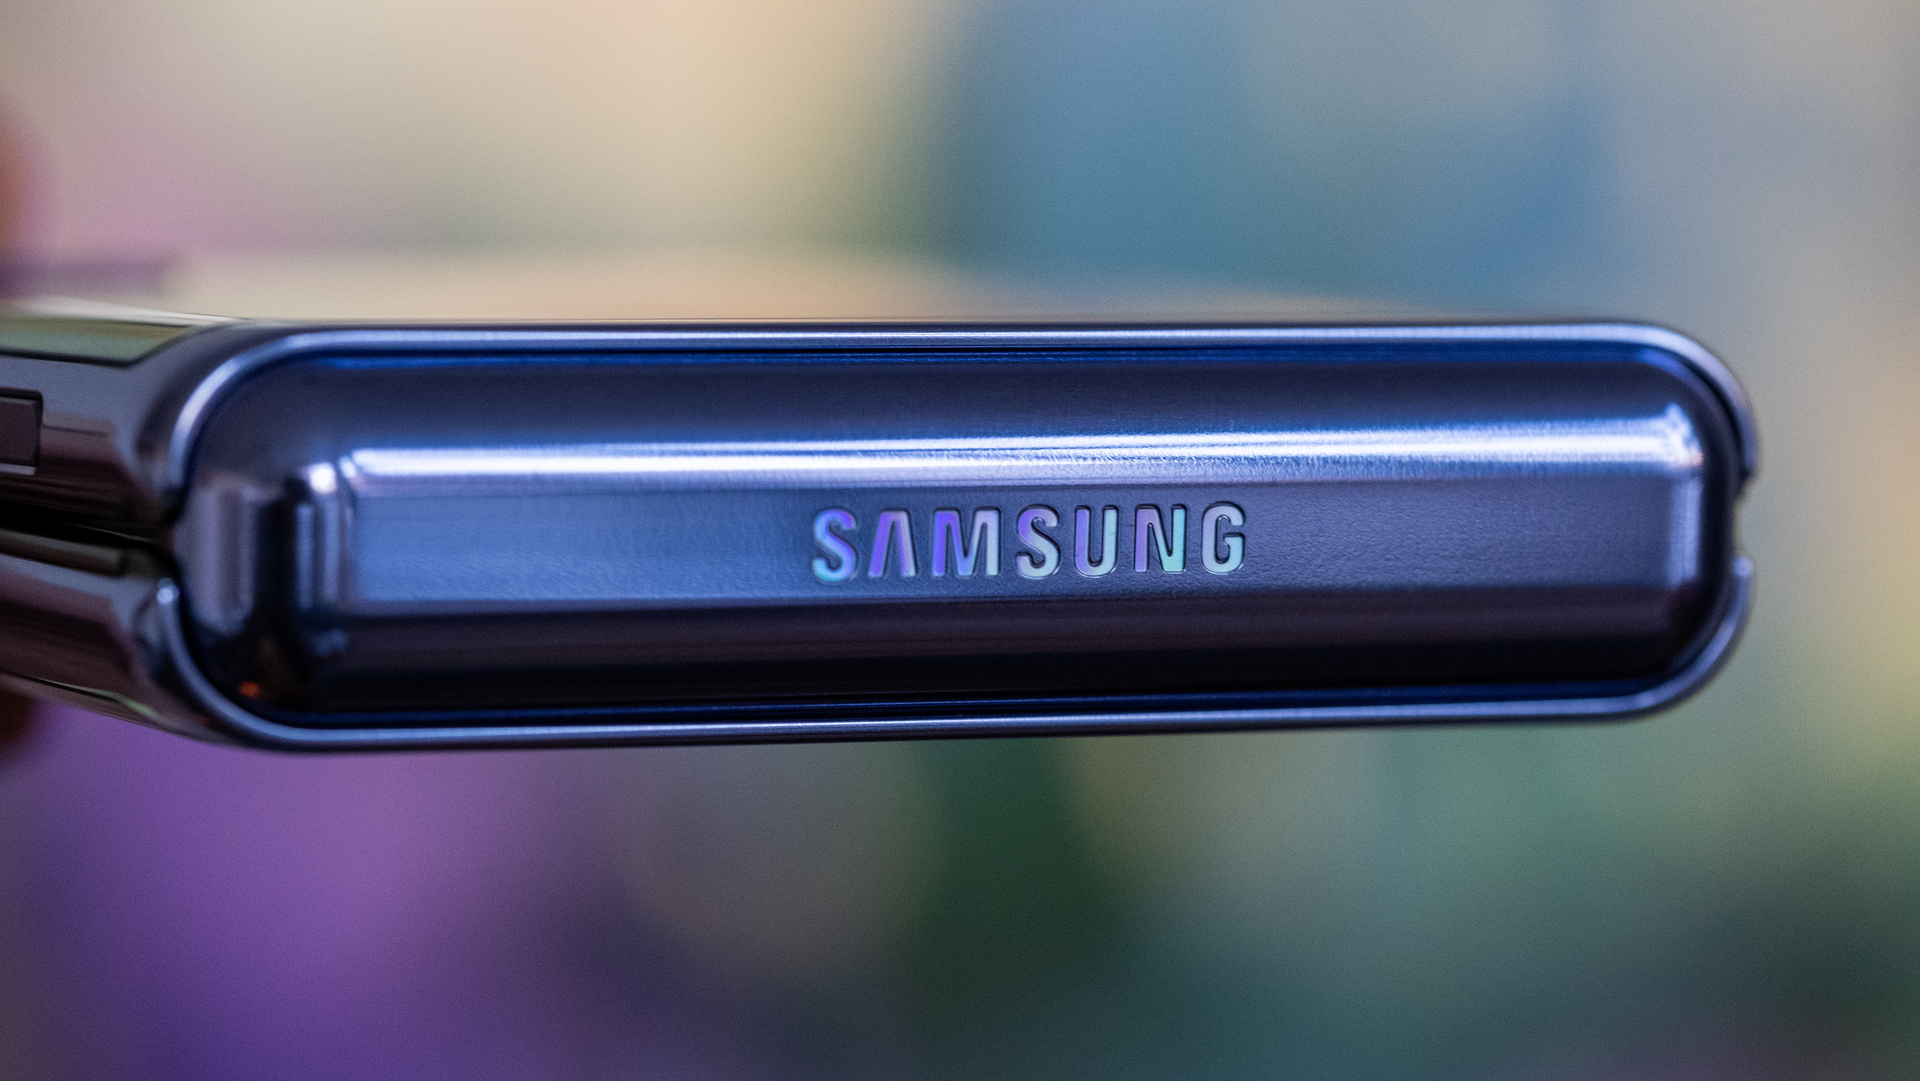 Samsung Galaxy Z Flip samusng logo